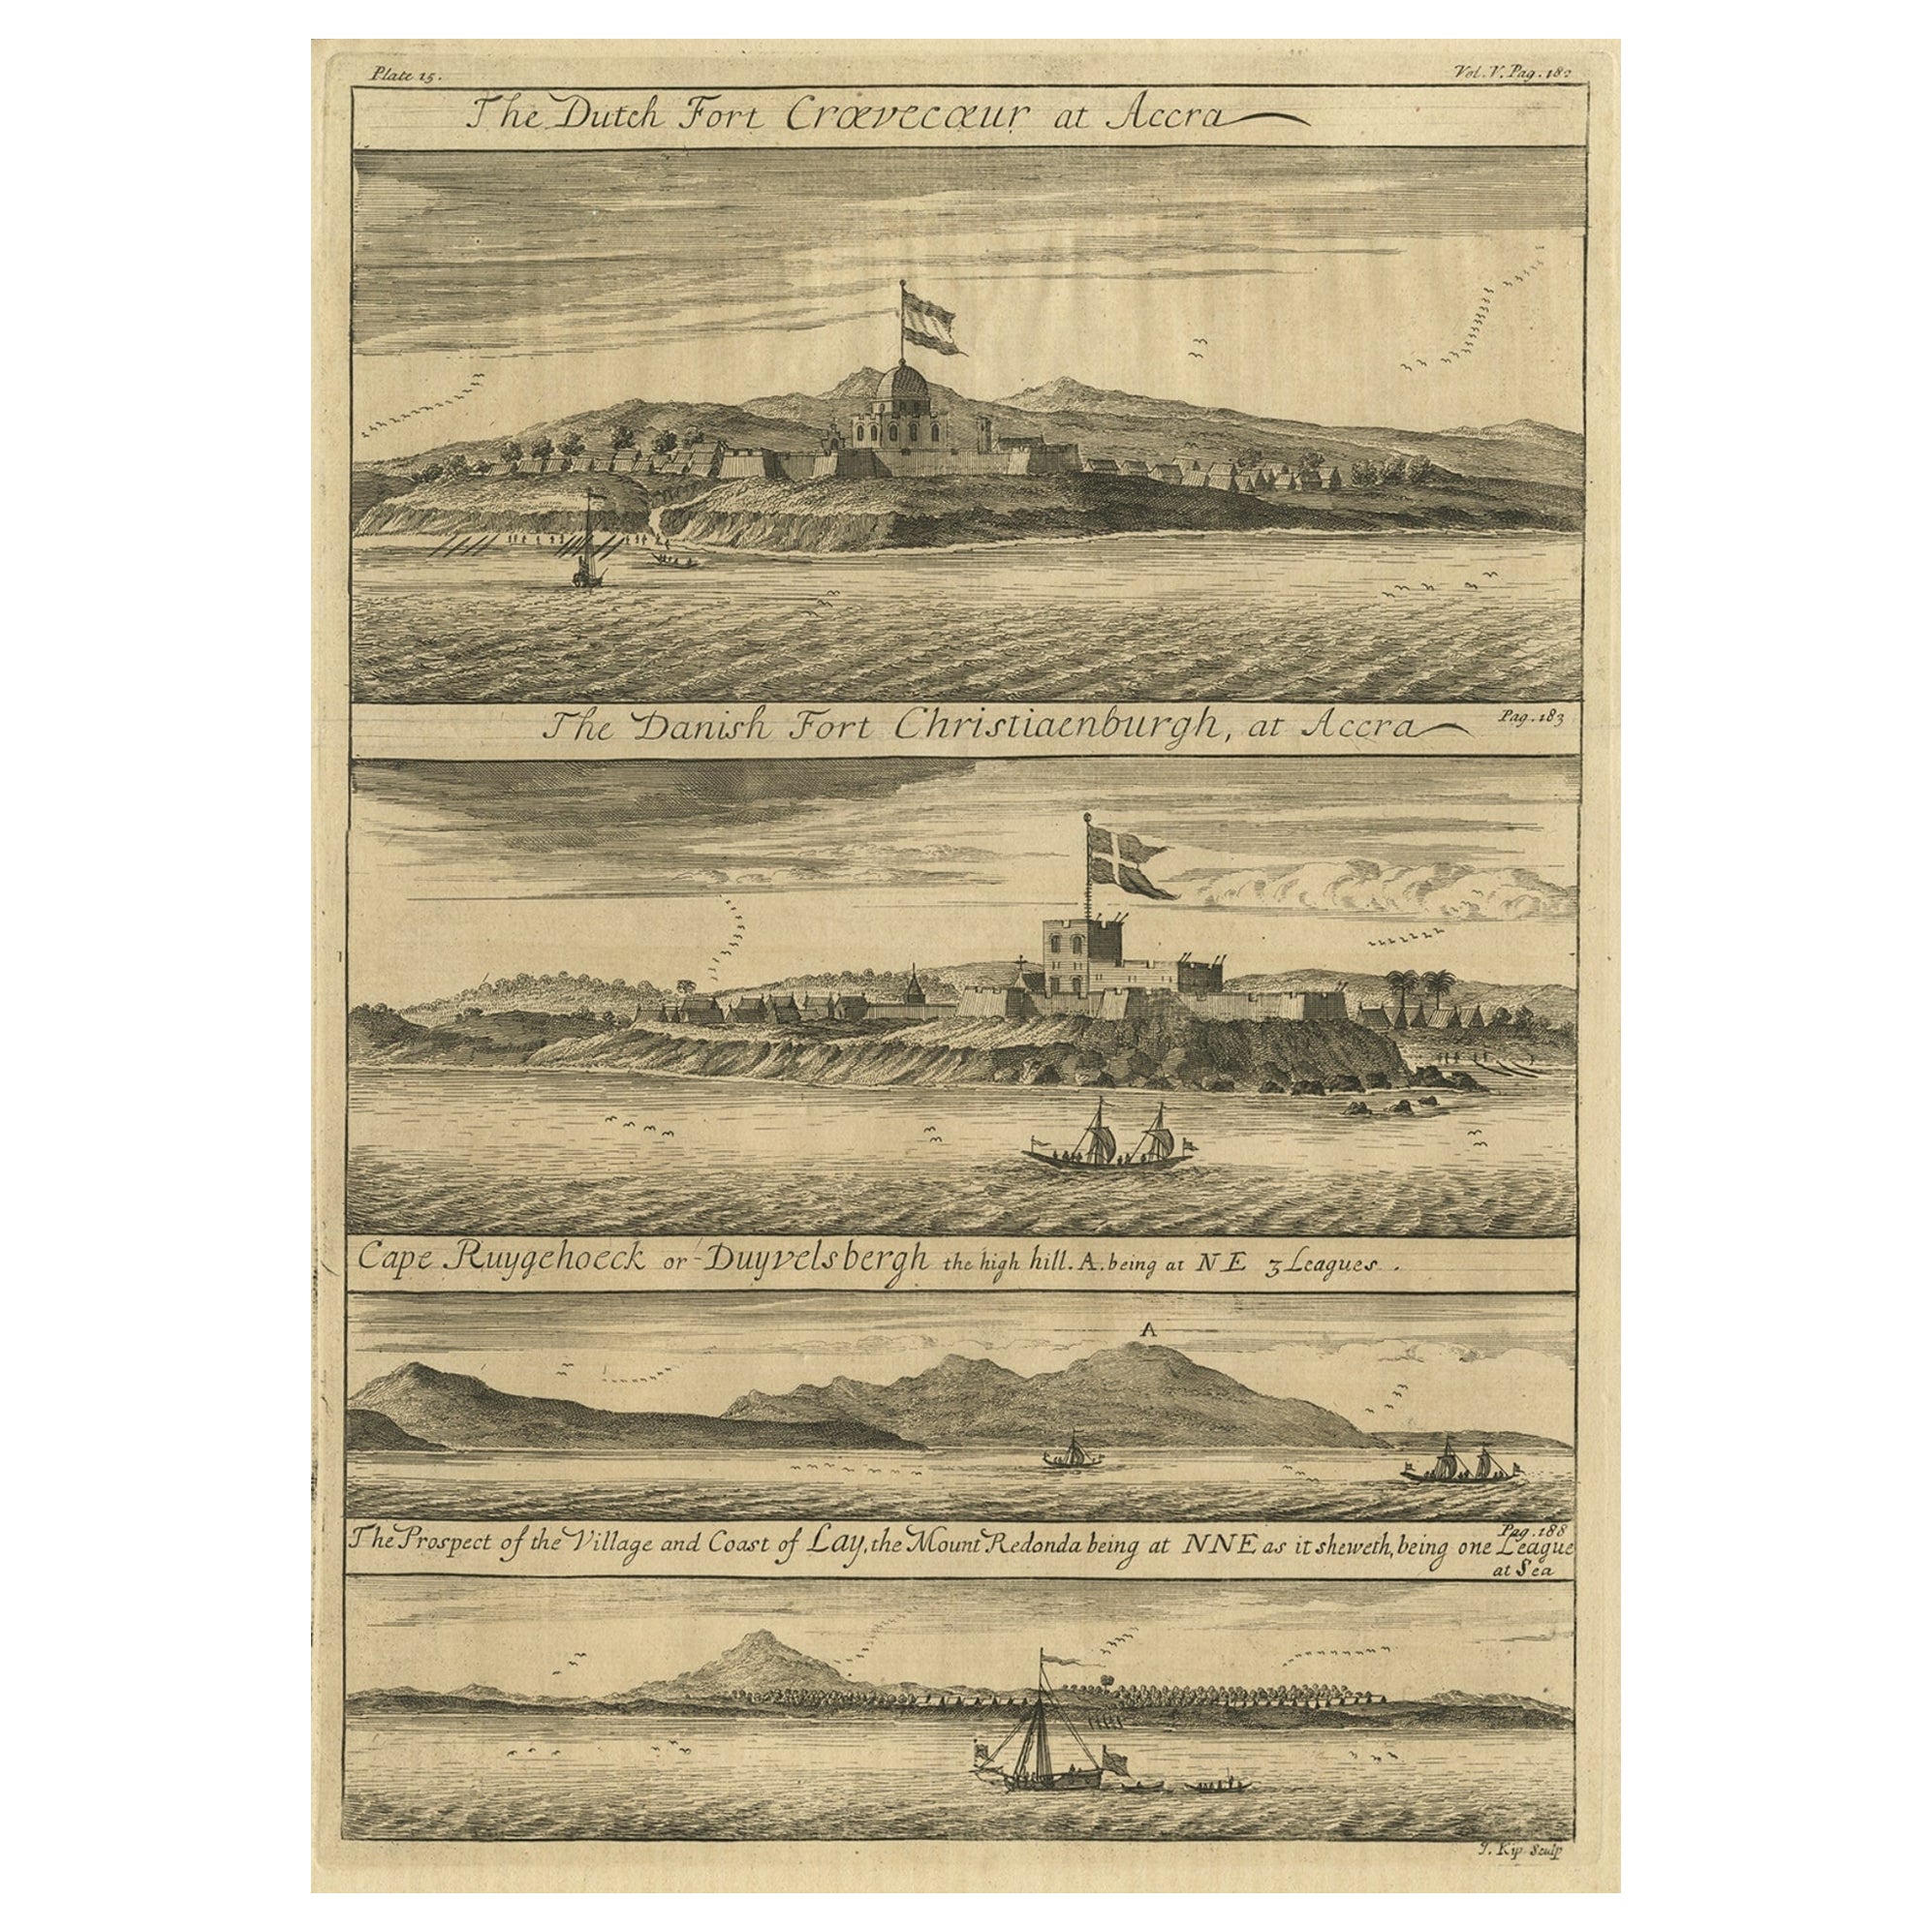 Seltene Gravur niederländischer und dänischer Festungen an der Westafrikanischen Goldküste, 1744